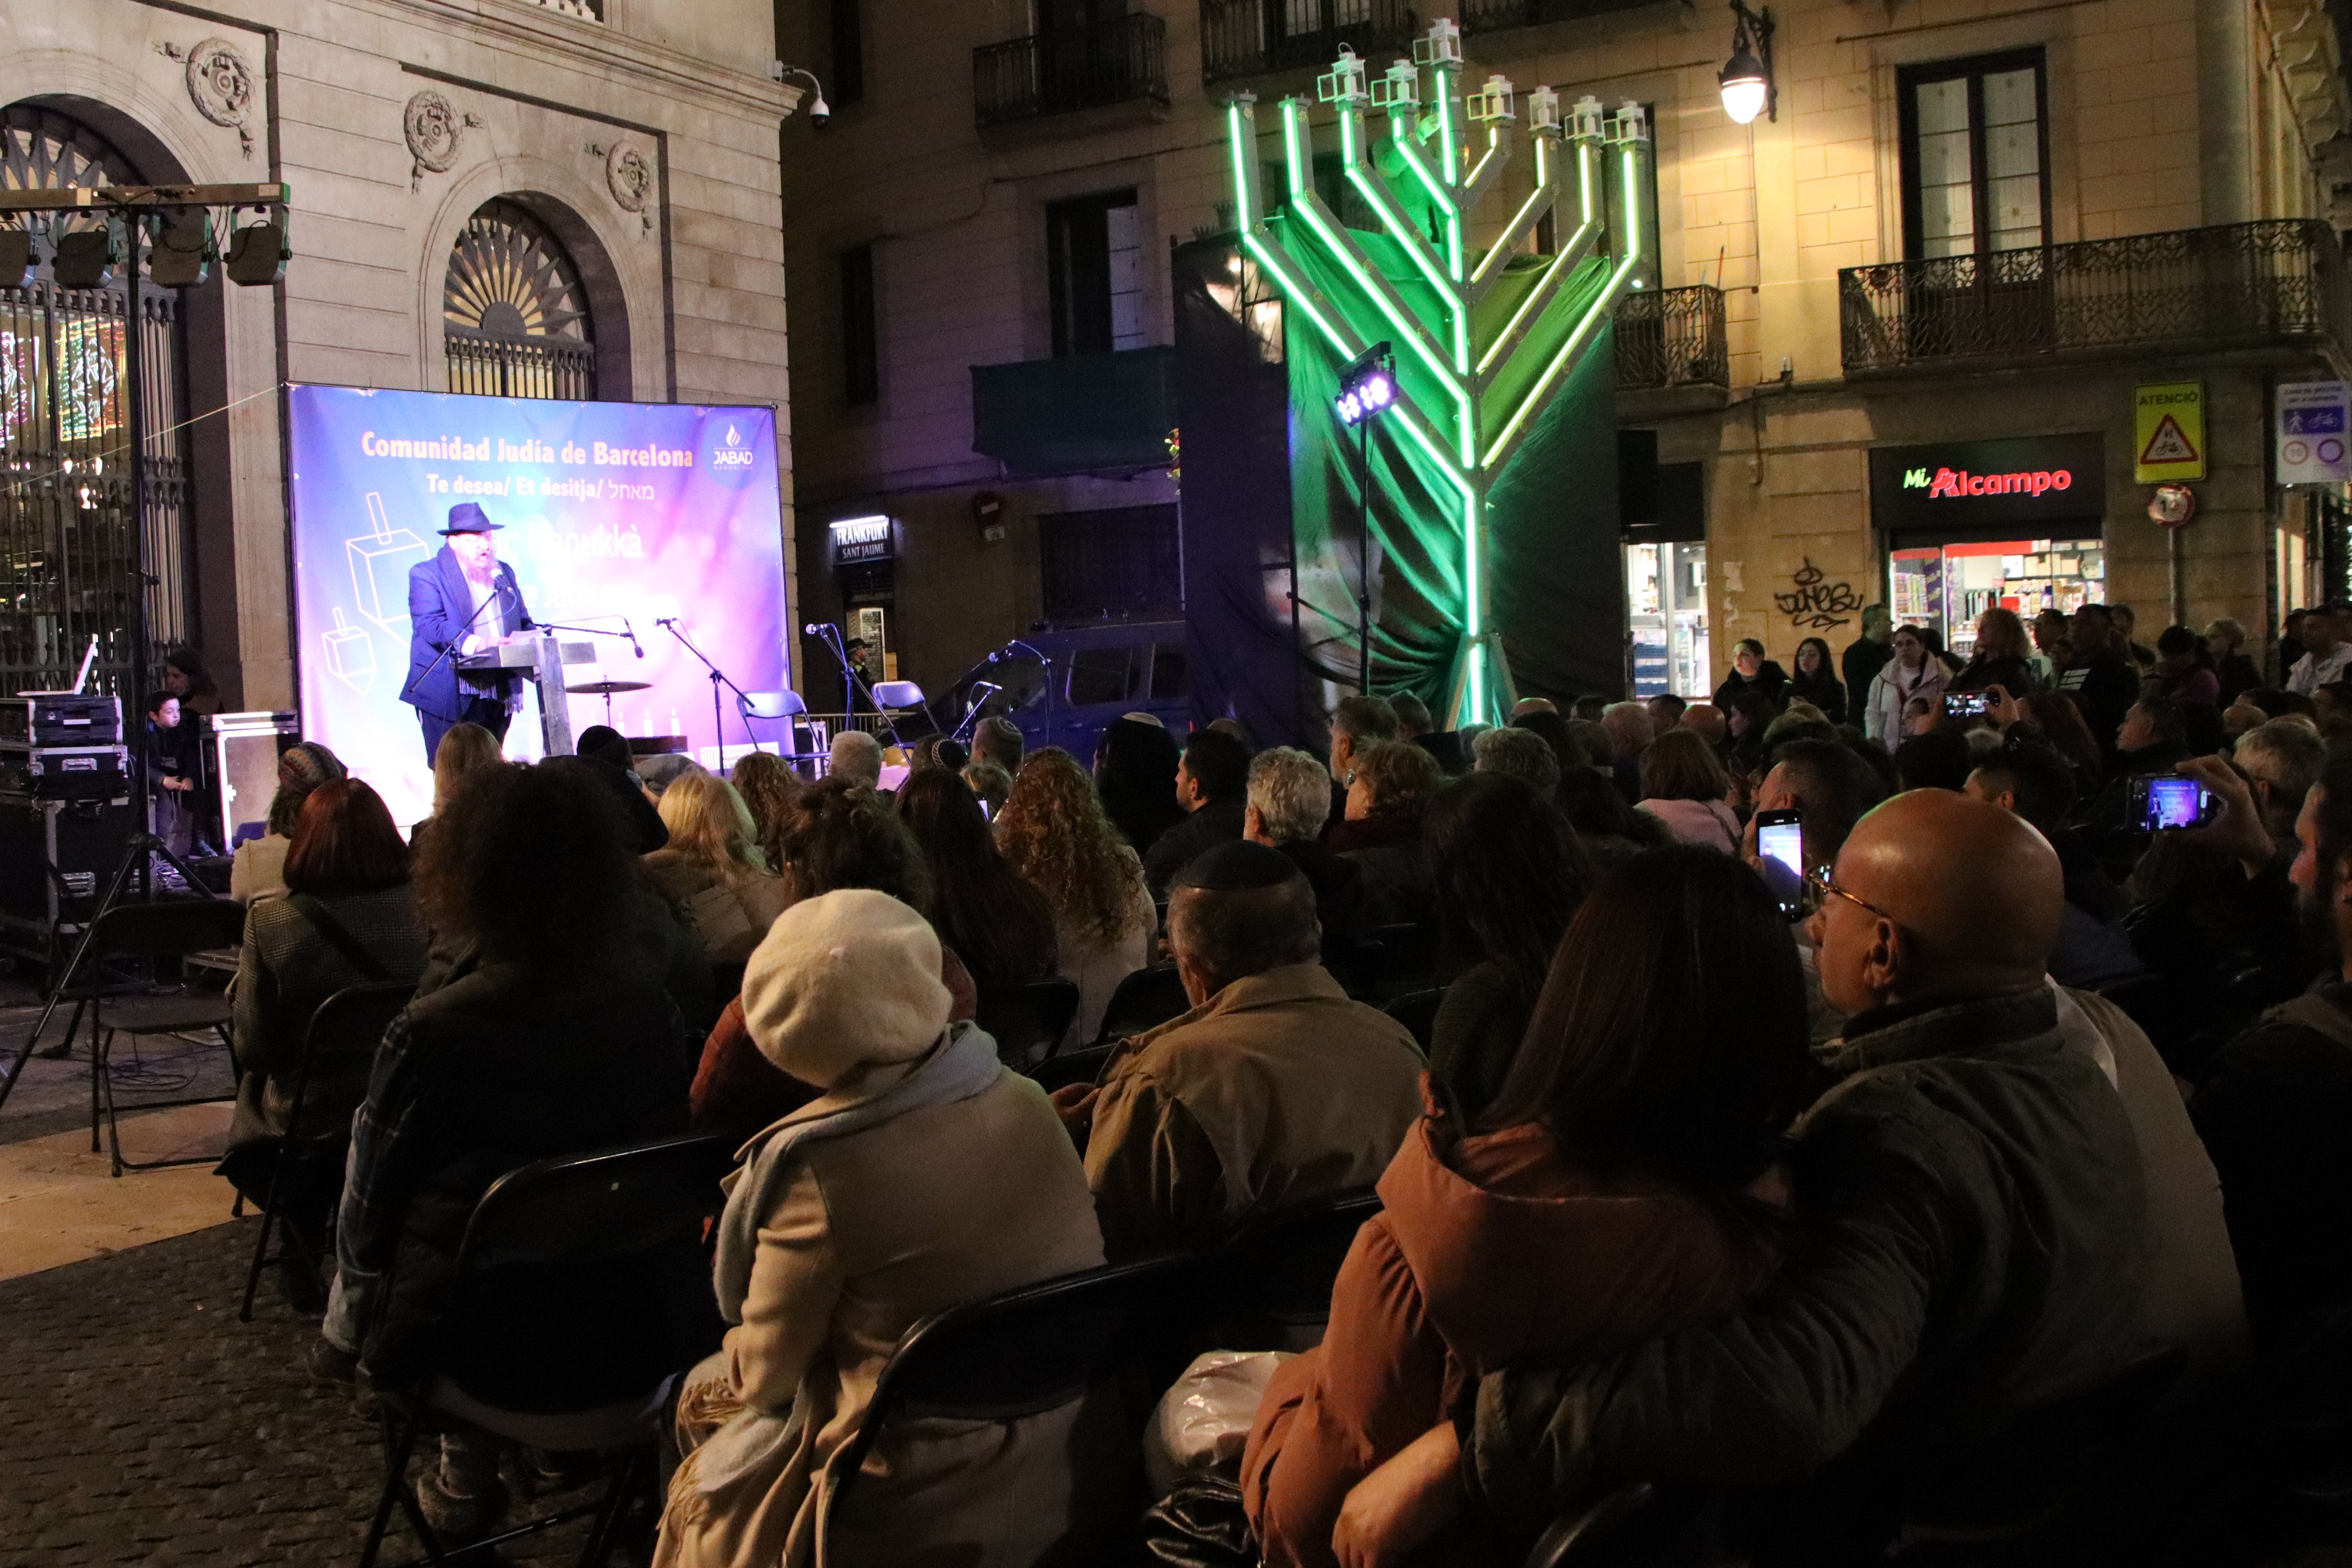 La comunidad judía agradece a Barcelona que refuerce el compromiso contra el antisemitismo